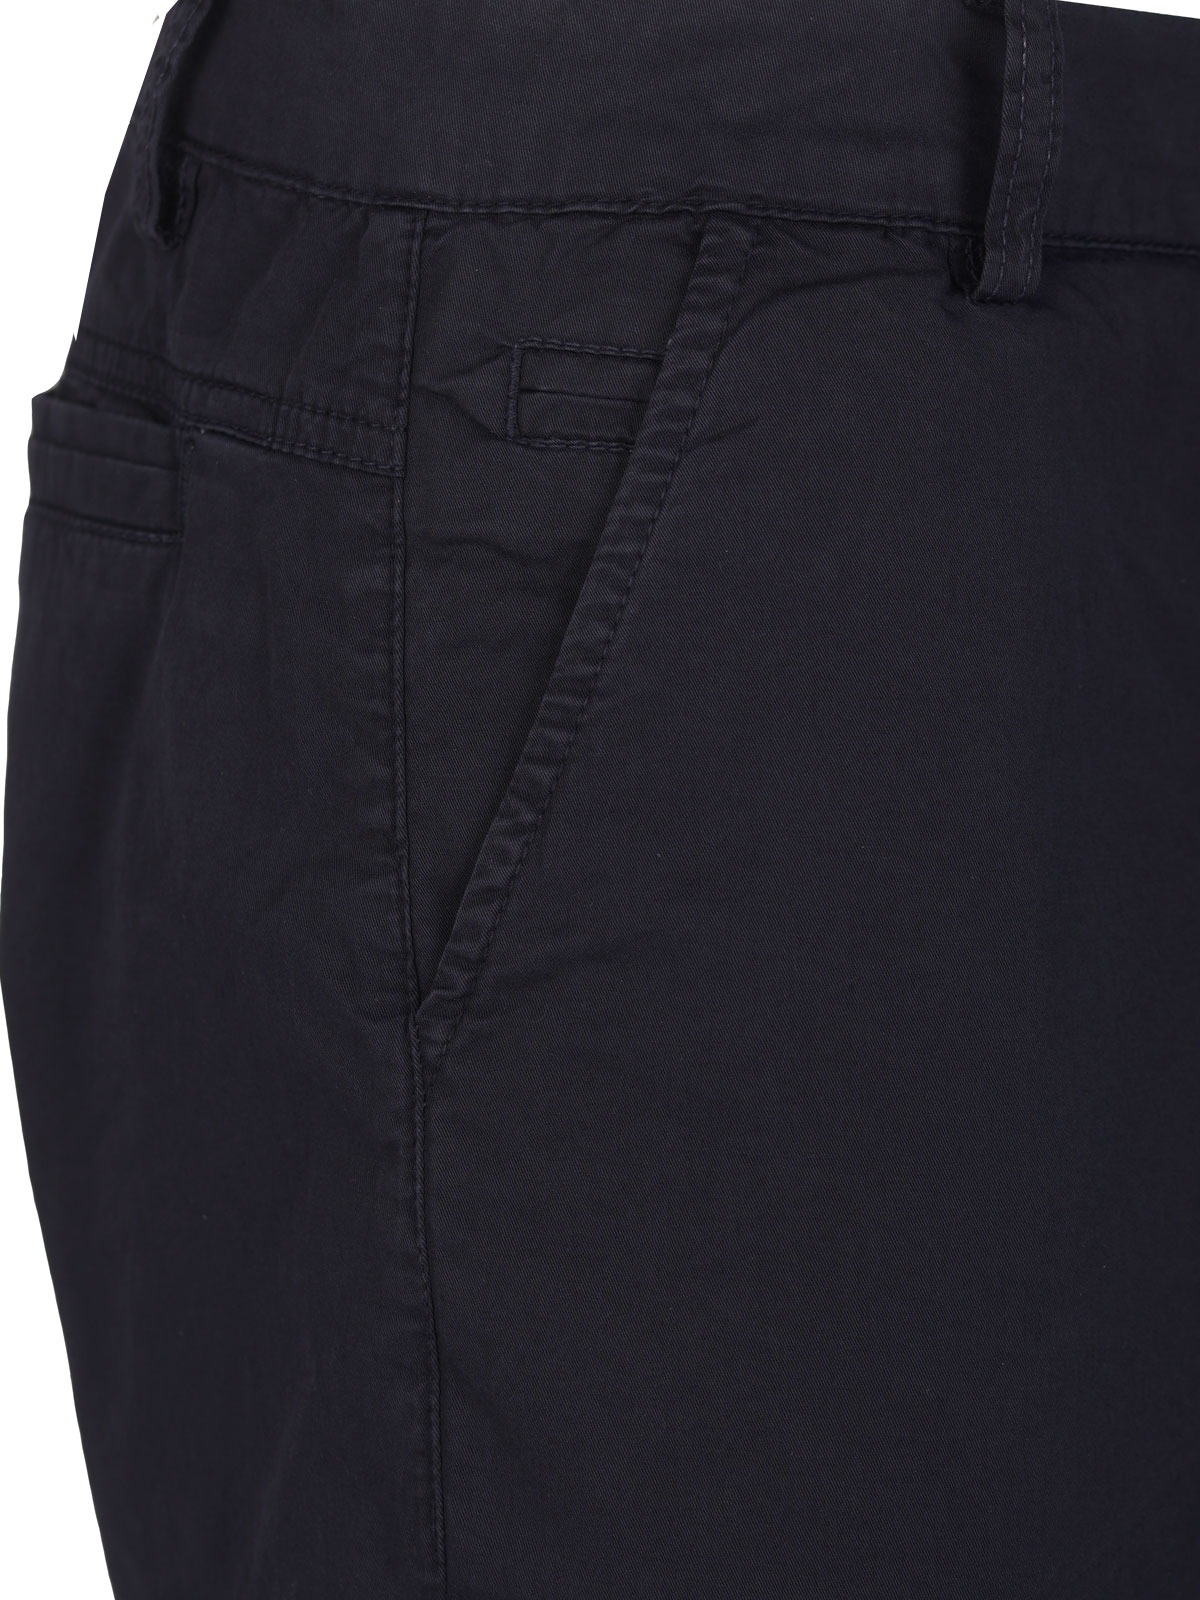 Κοντό παντελόνι σε σκούρο μπλε - 67090 € 43.87 img2